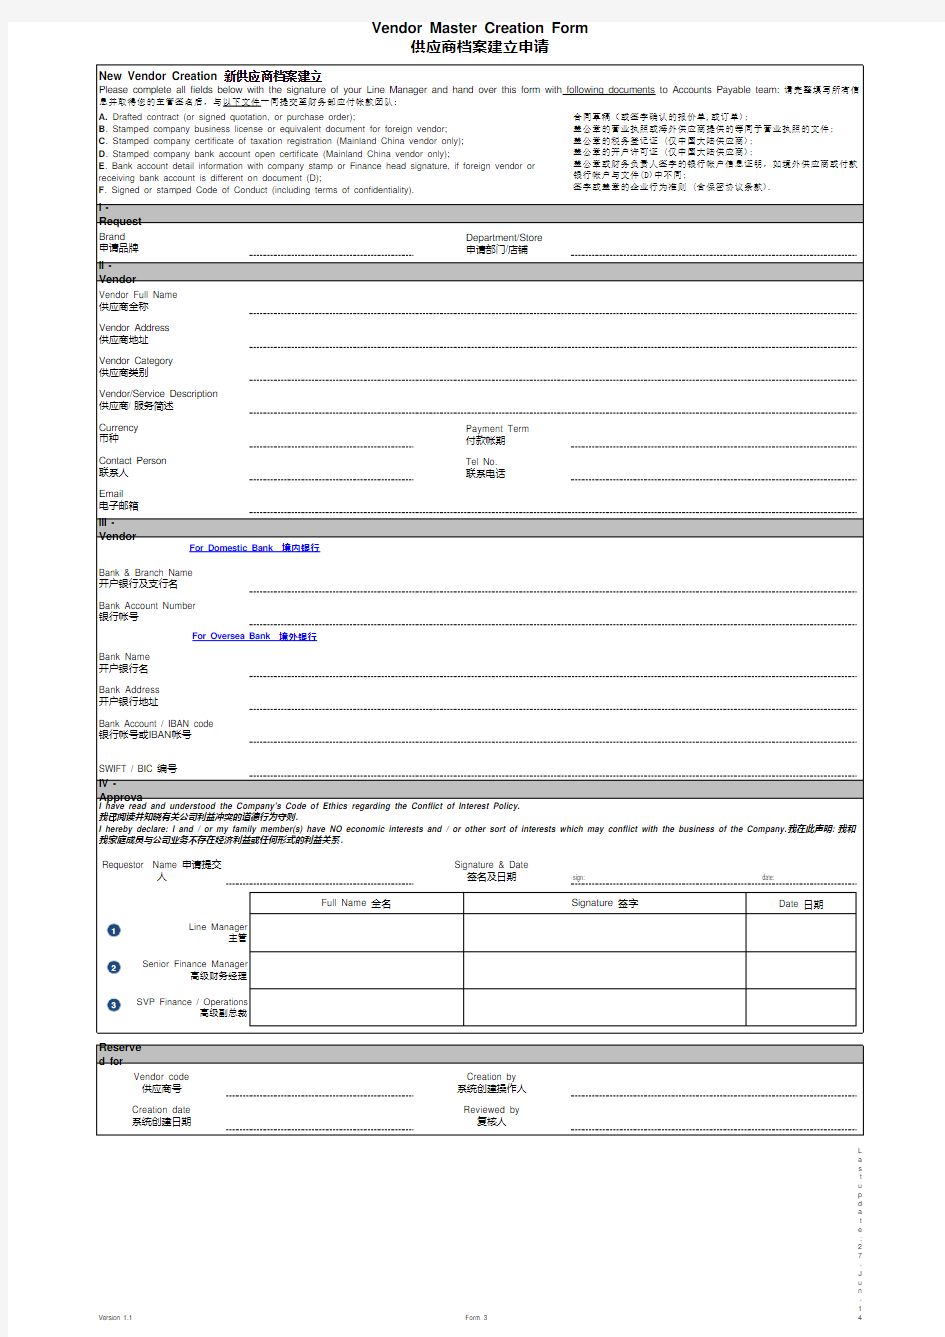 供应商建立入库申请表格模板vendor creation form.